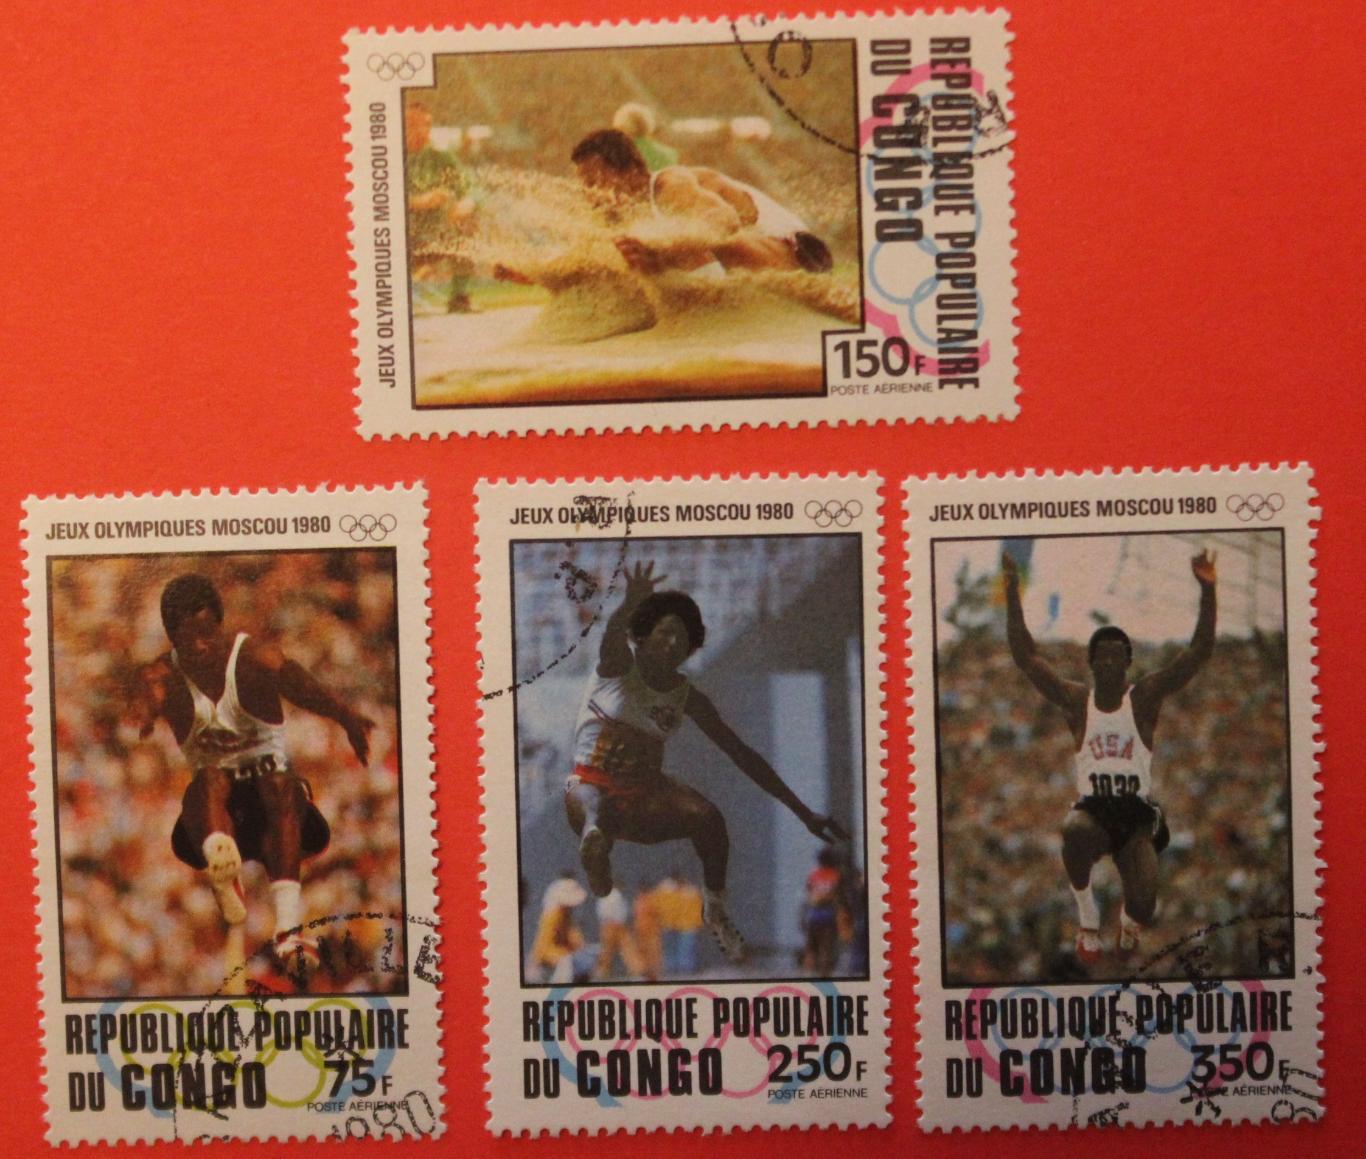 Олимпийские игры в Москве 1980. Легкая атлетика (прыжки). Почта Конго 1980